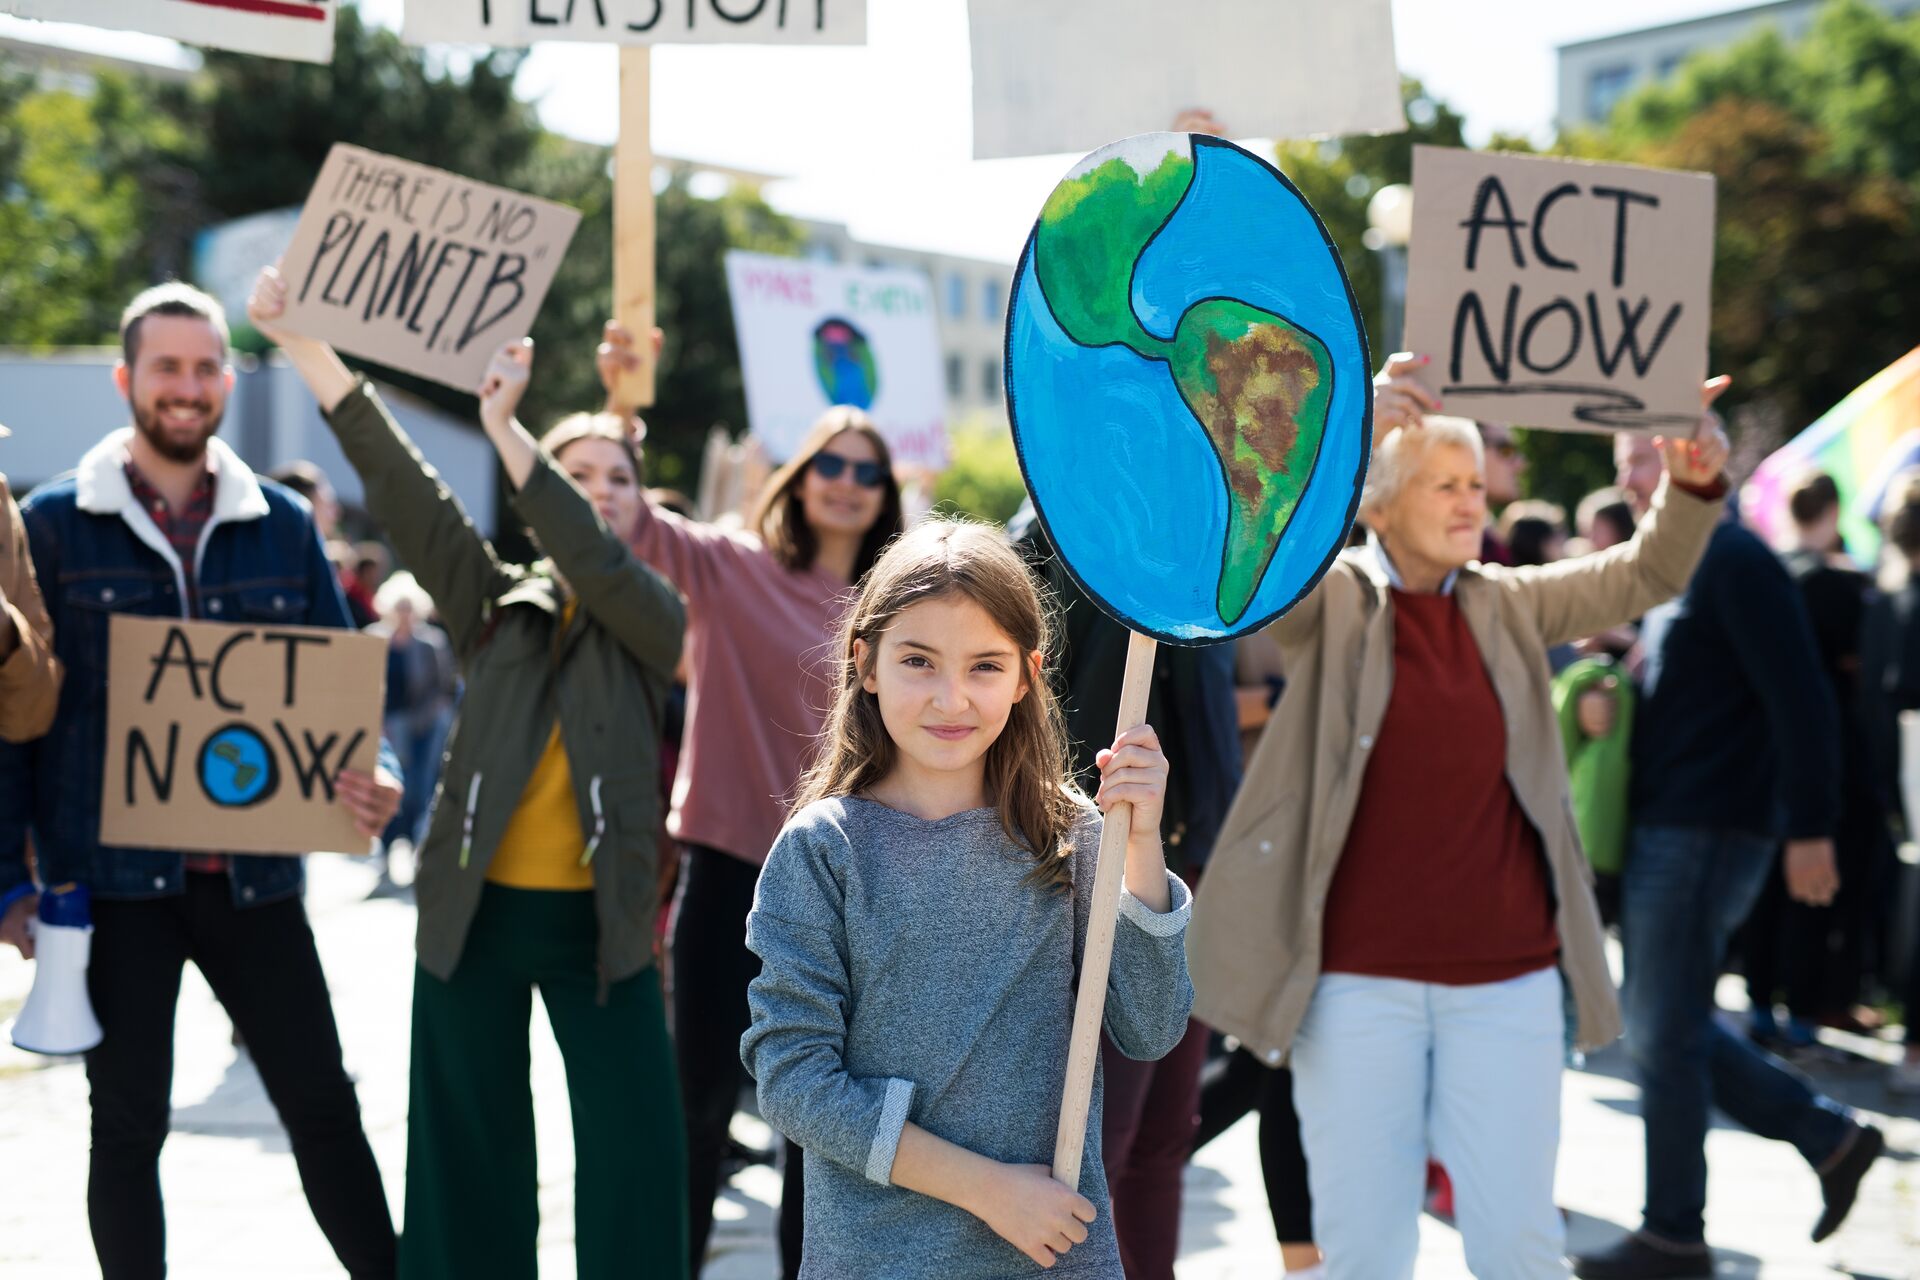 Biến đổi khí hậu: các nhà hoạt động đang kêu gọi hành động rất nhanh chóng